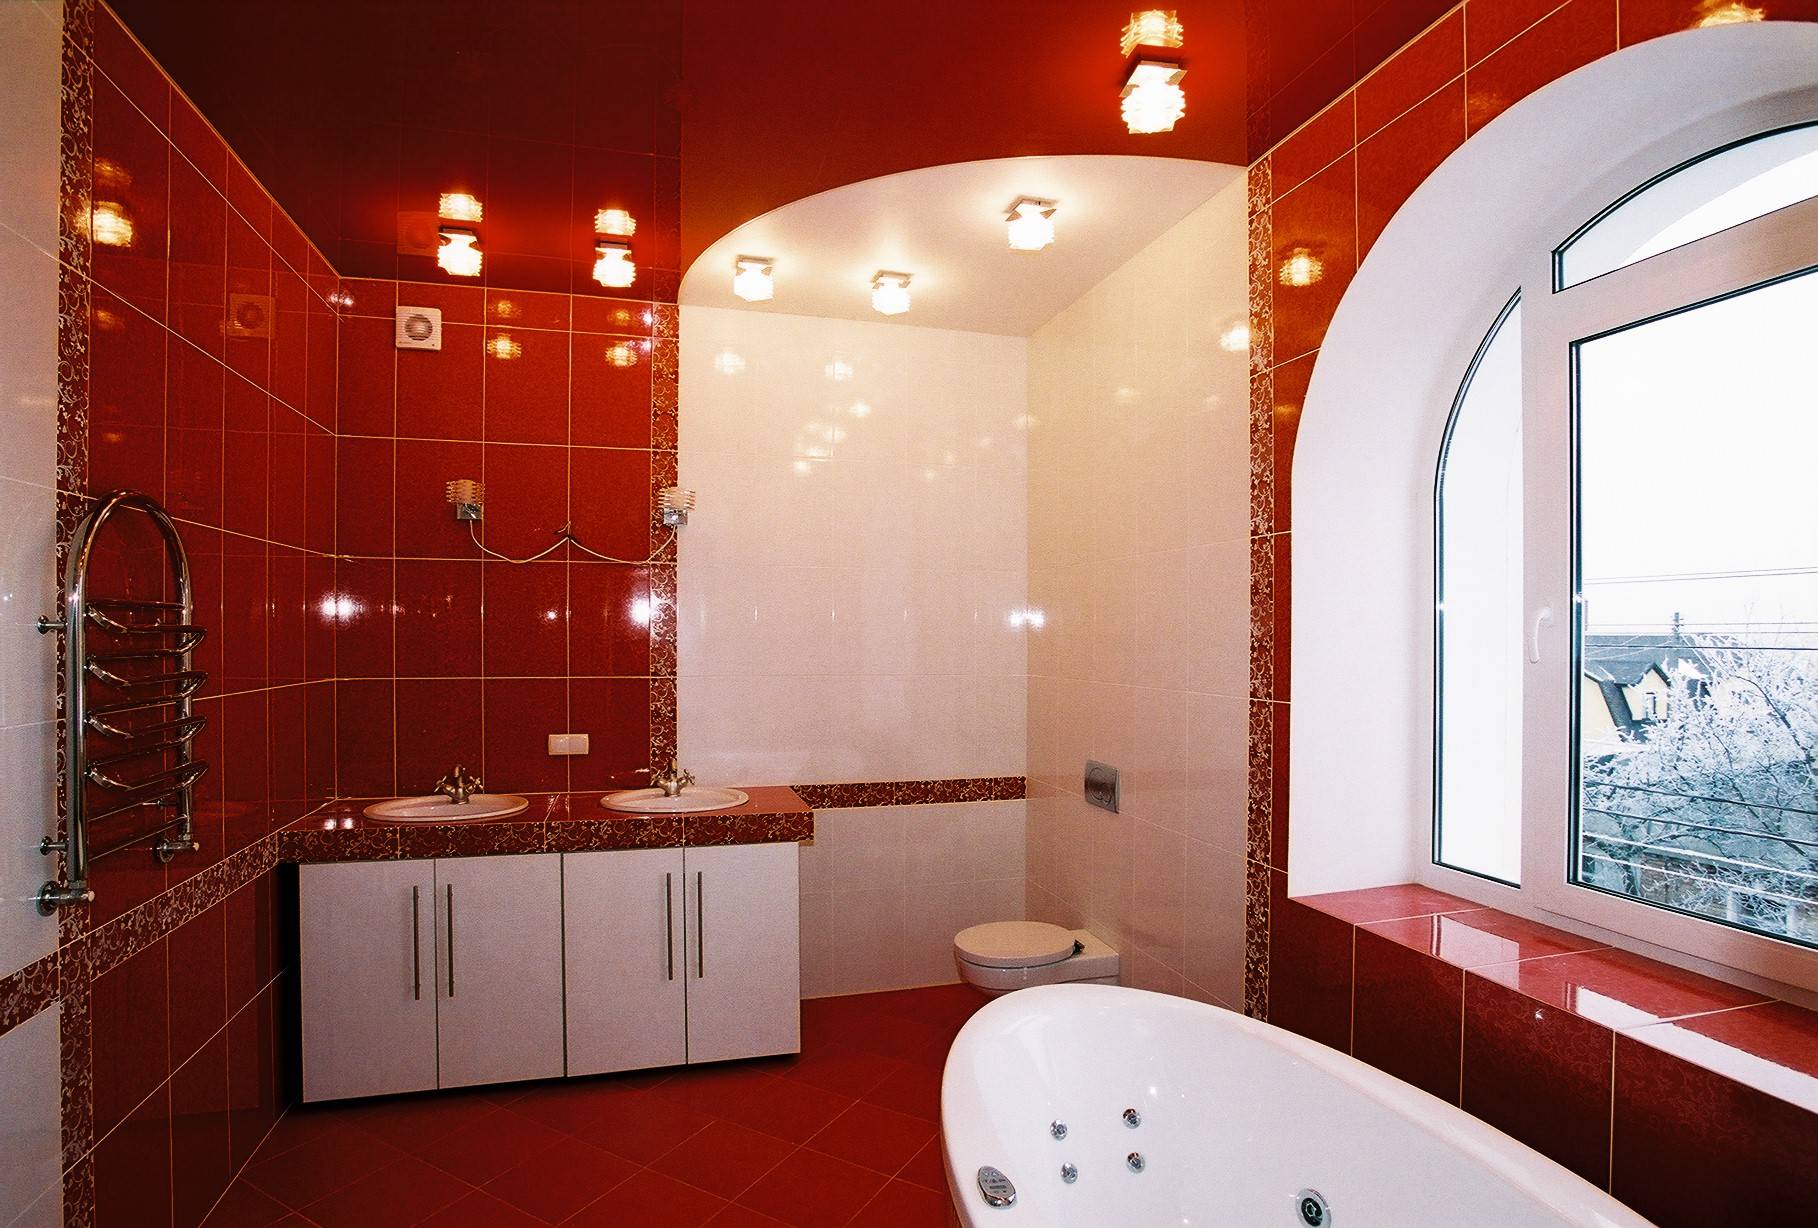 Натяжные потолки - дизайн потолка в зале, кухне, спальне, ванной и прихожей